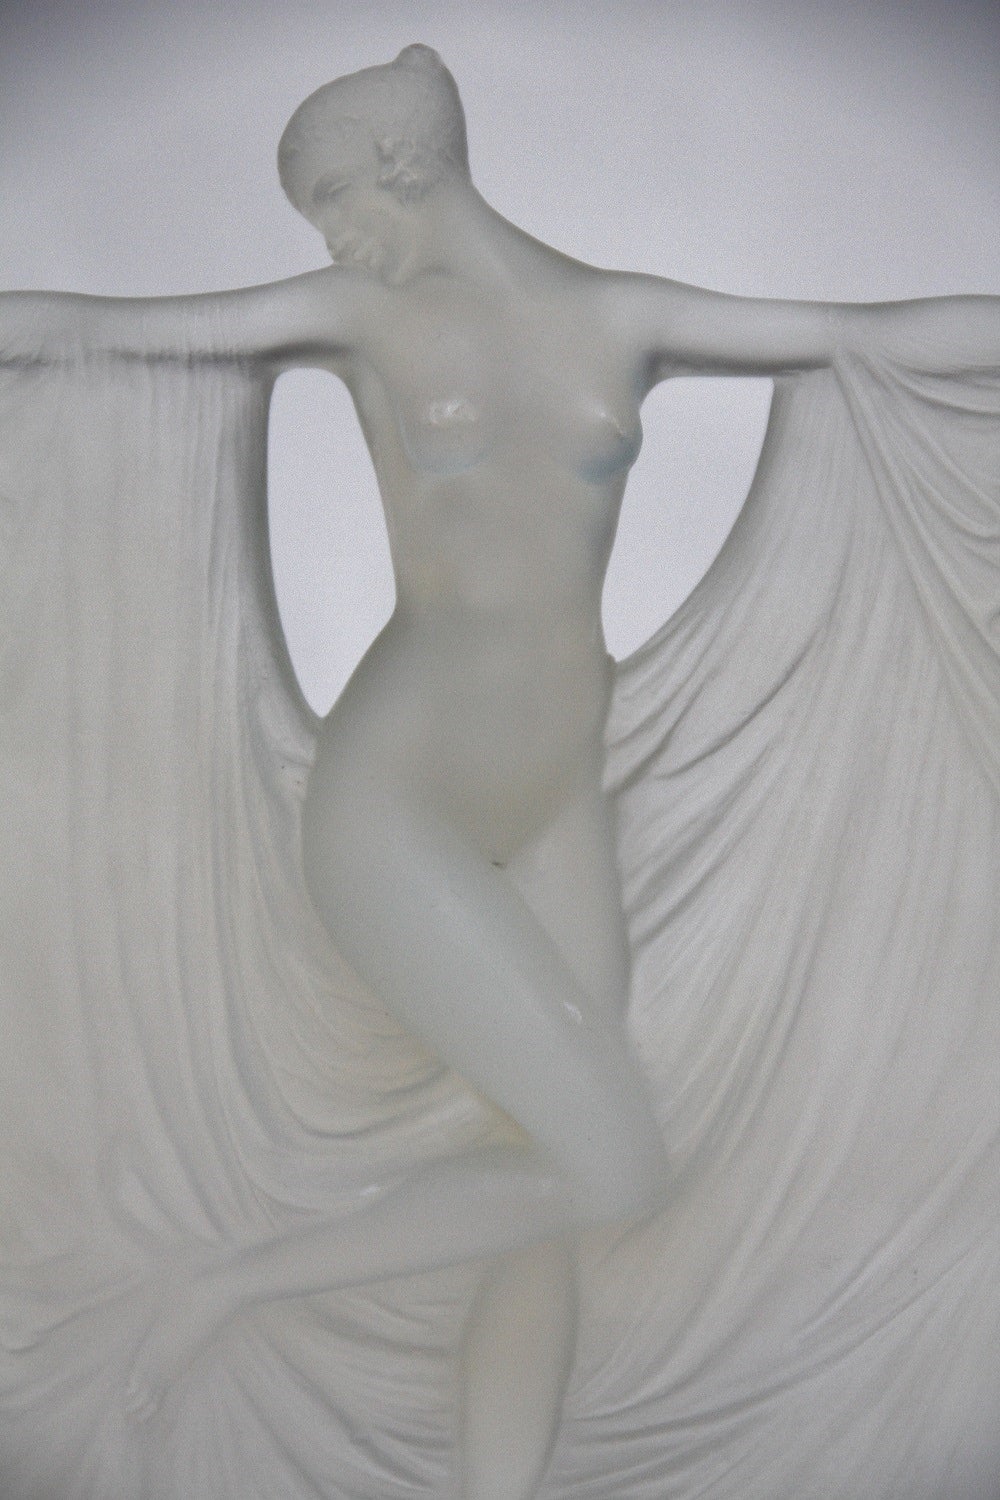 Rene Lalique glass statuette Suzanne figure
dite aussi statuette - Suzanne premier modele
modele cree le 7 juillet 1925
verre blanc moule-presse patine opalescent et couleur
haut. 23cm 
figure aux catalogues de 1928 et de 1932
supprime du